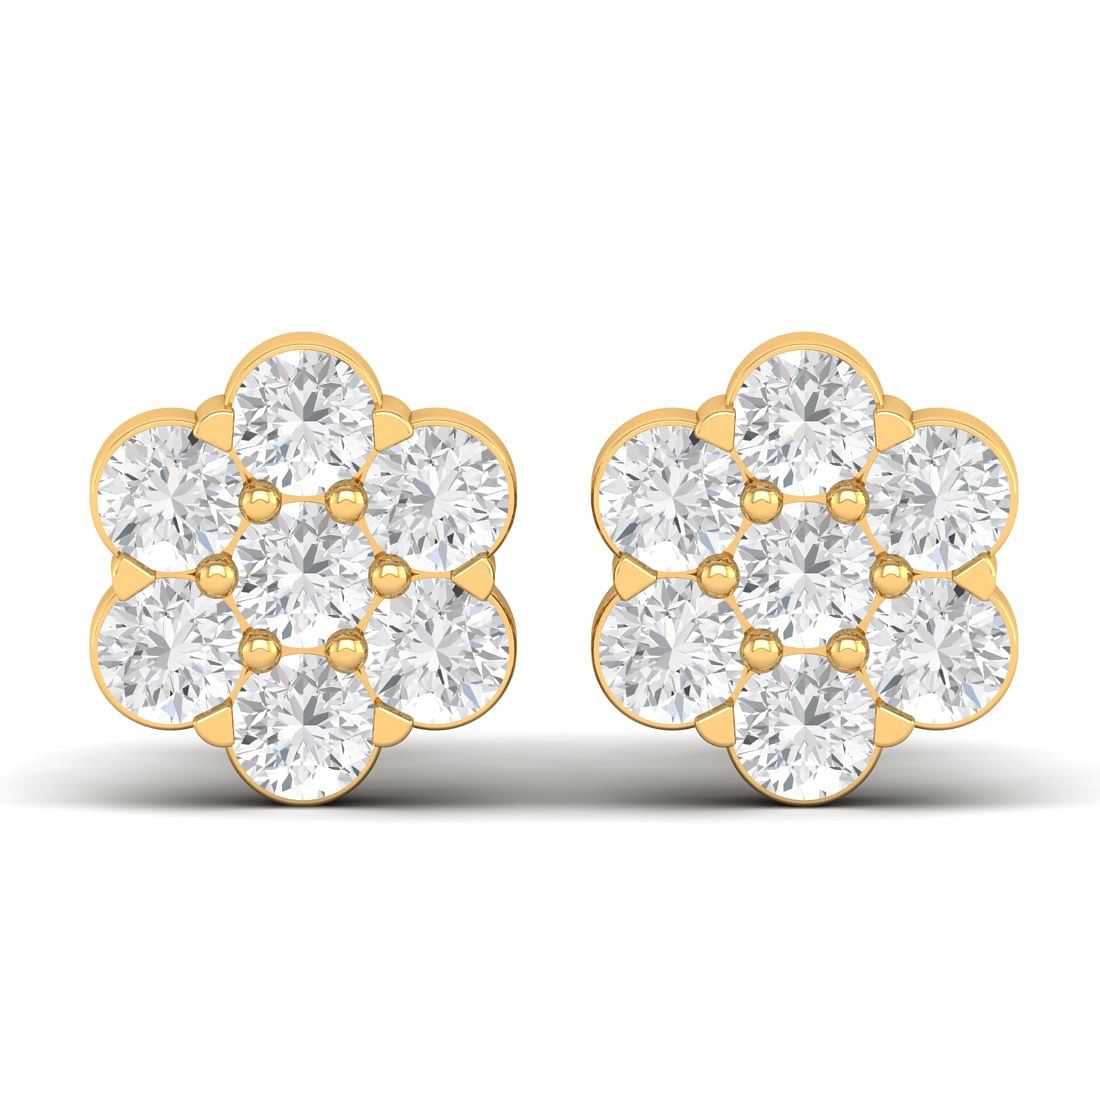 14k Yellow Gold Day Flower Diamond Earrings Gift for her